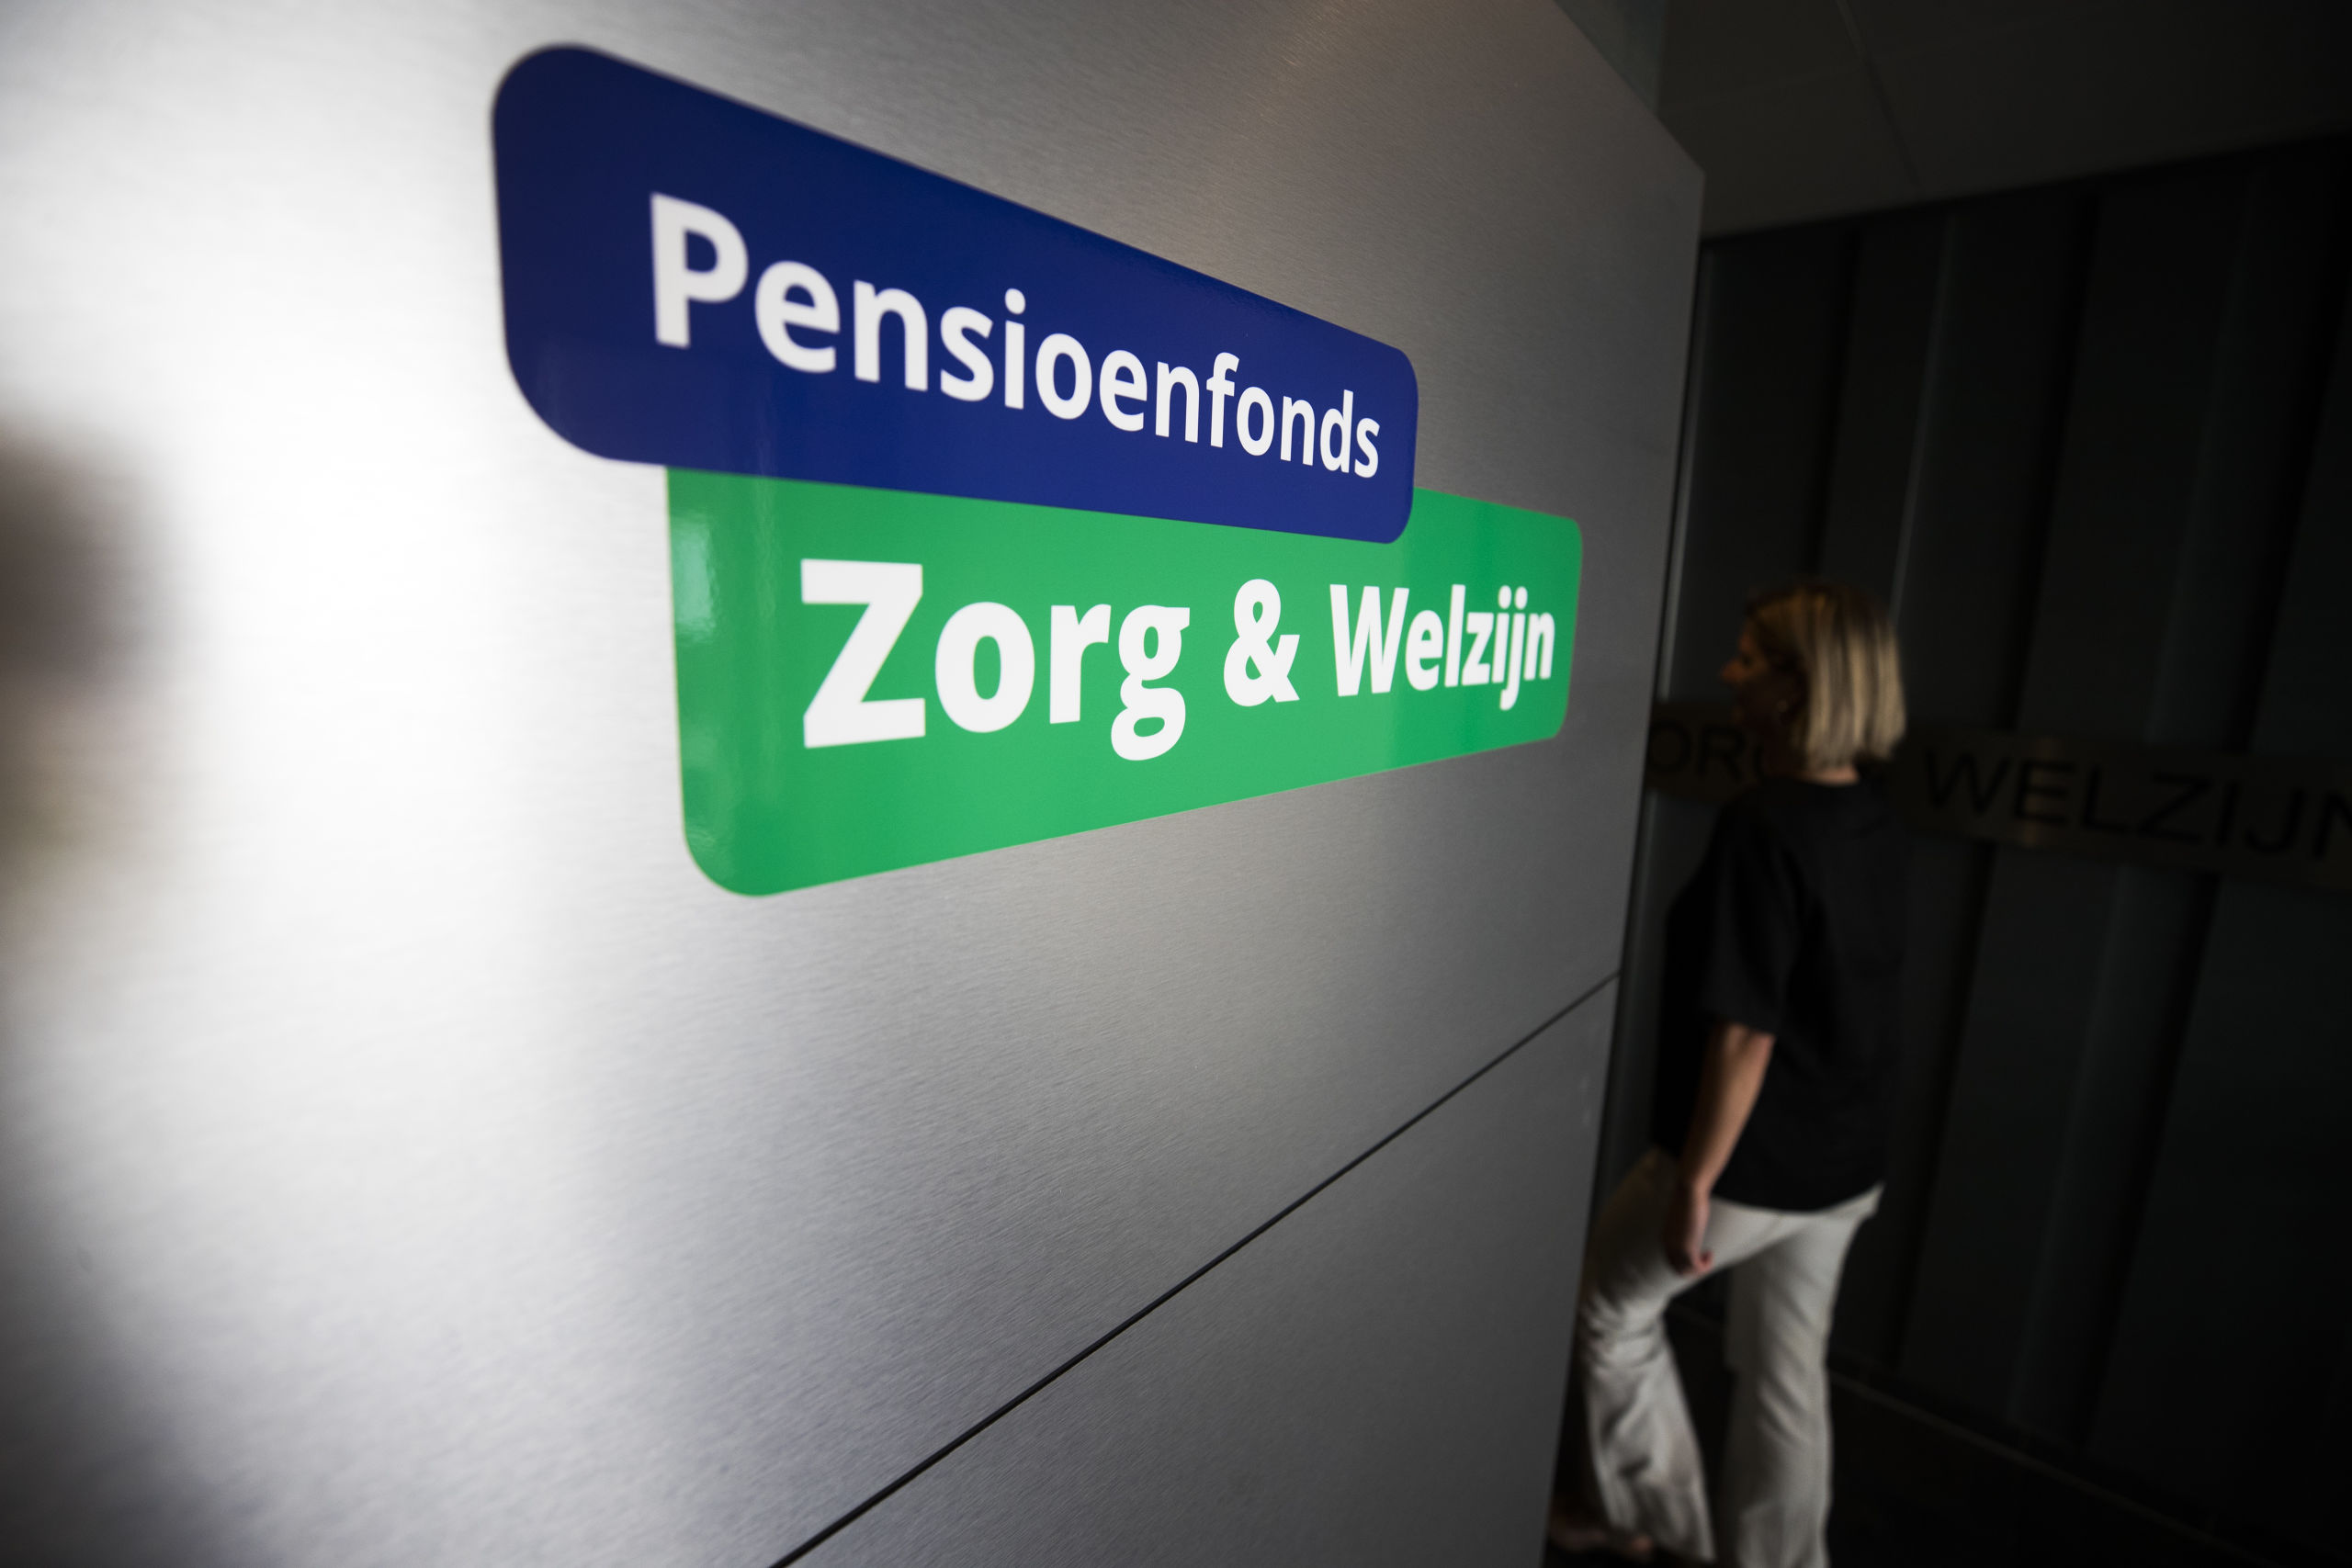 Pensioenfonds Zorg & Welzijn. 